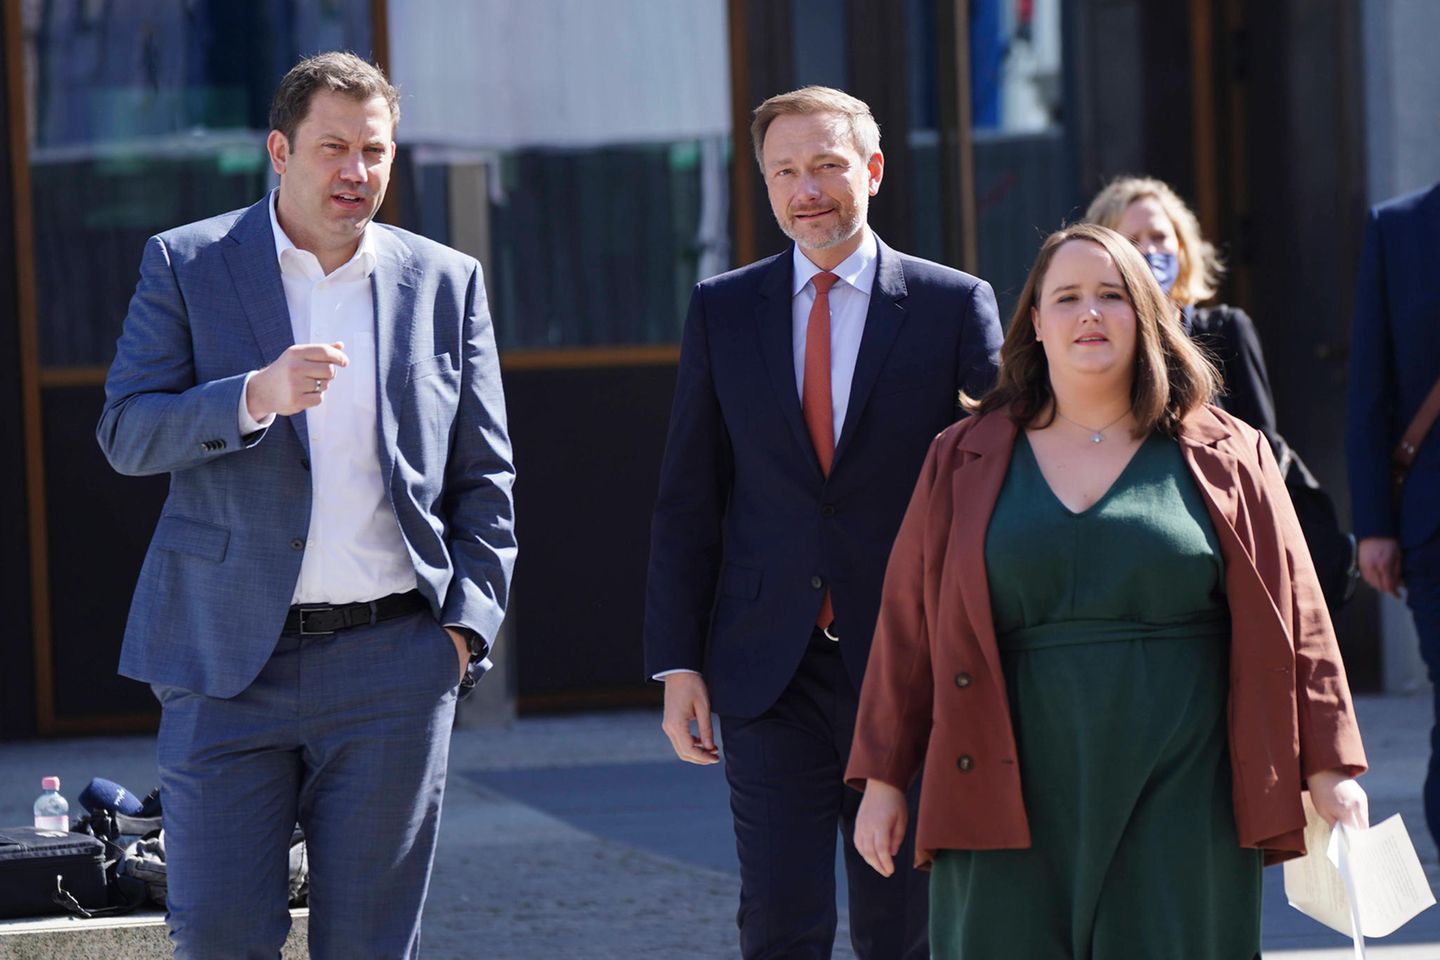 Die drei Parteichefs Lars Klingbeil (SPD), Christian Lindner (FDP) und Ricarda Lange (Grüne) verkündeten am Vormittag den Kompromiss